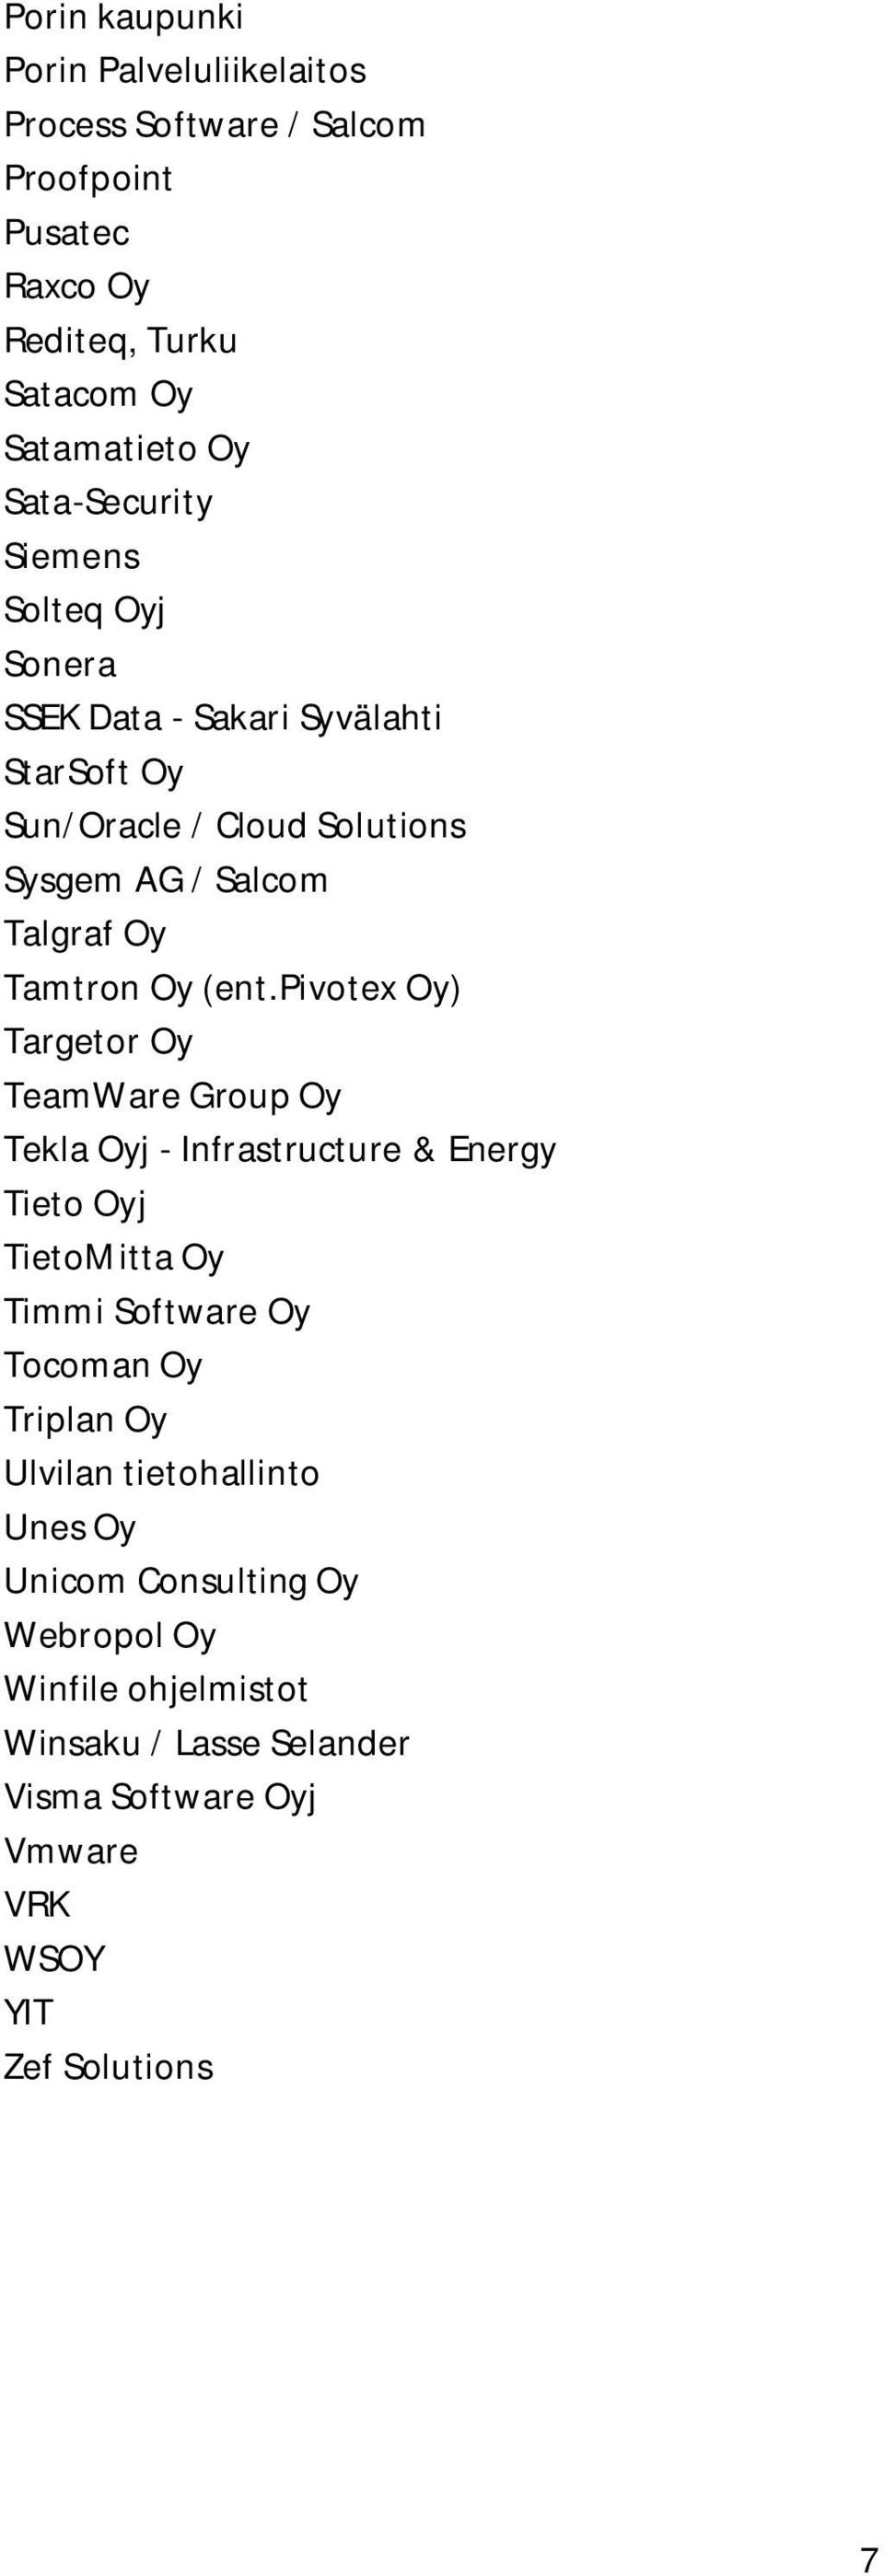 pivotex Oy) Targetor Oy TeamWare Group Oy Tekla Oyj - Infrastructure & Energy Tieto Oyj TietoMitta Oy Timmi Software Oy Tocoman Oy Triplan Oy